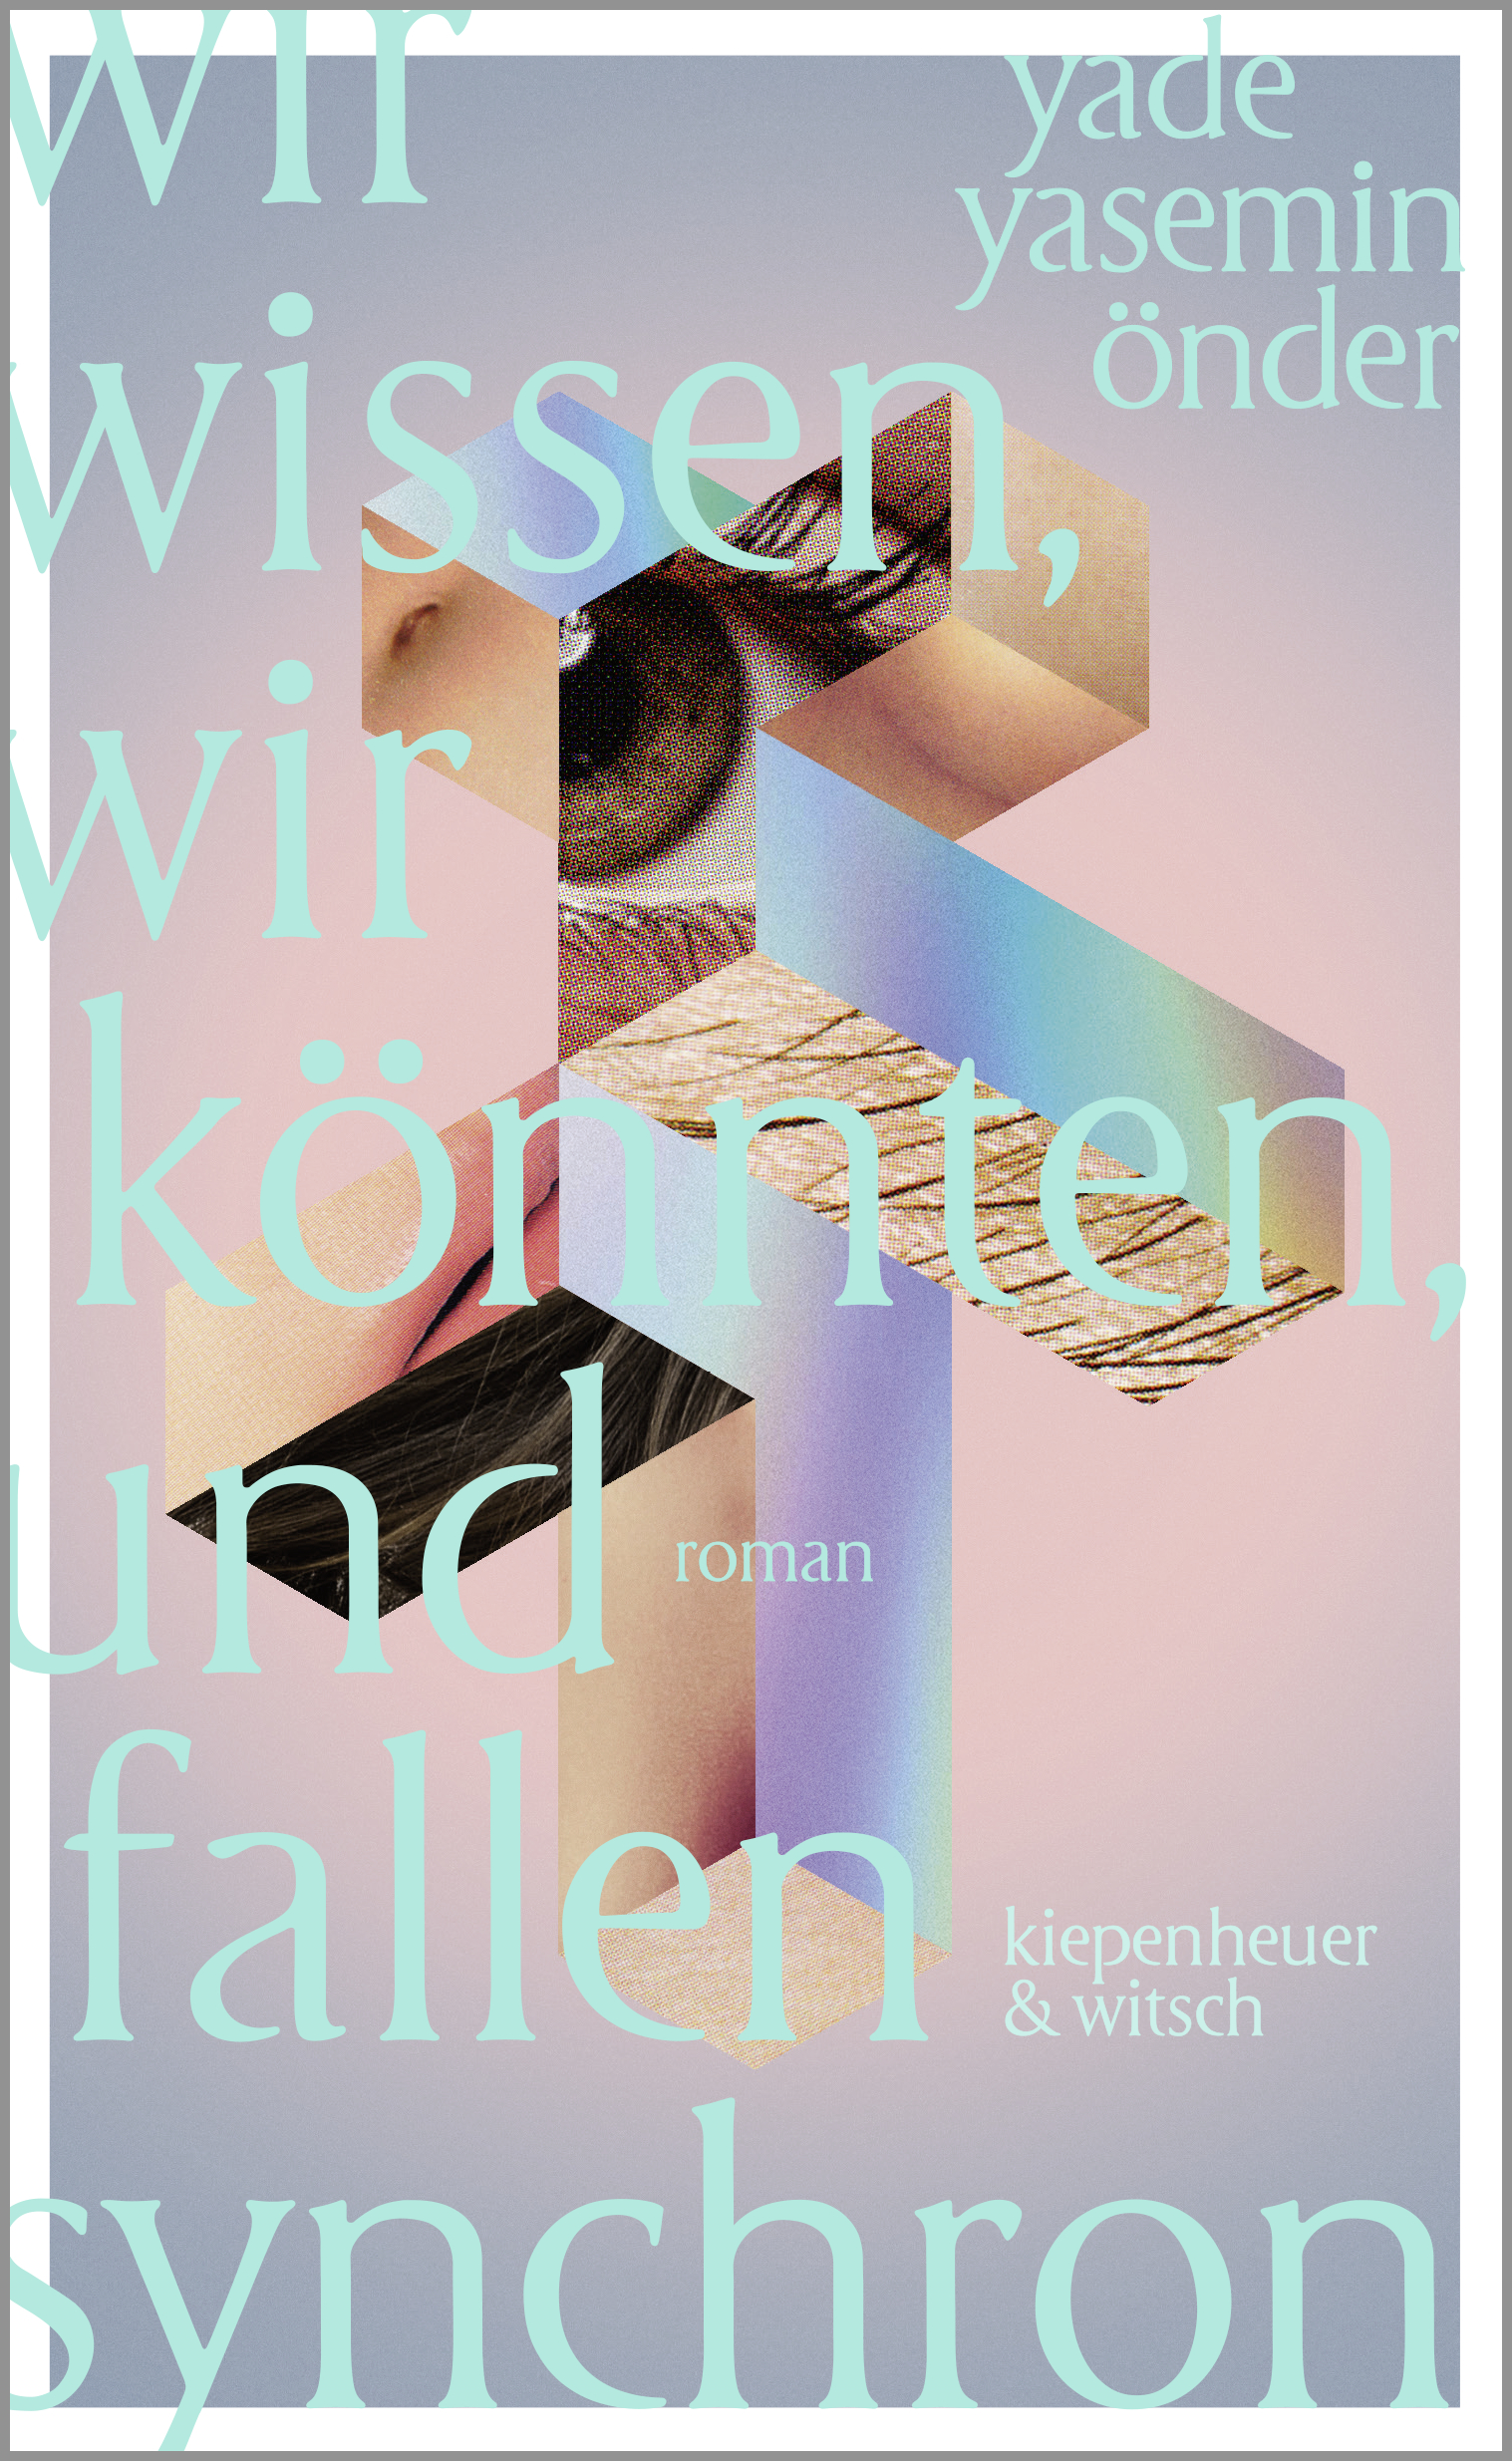 Cover des Buches "Wir wissen, wir könnten, und fallen synchron" von Yade Yasemin Önder